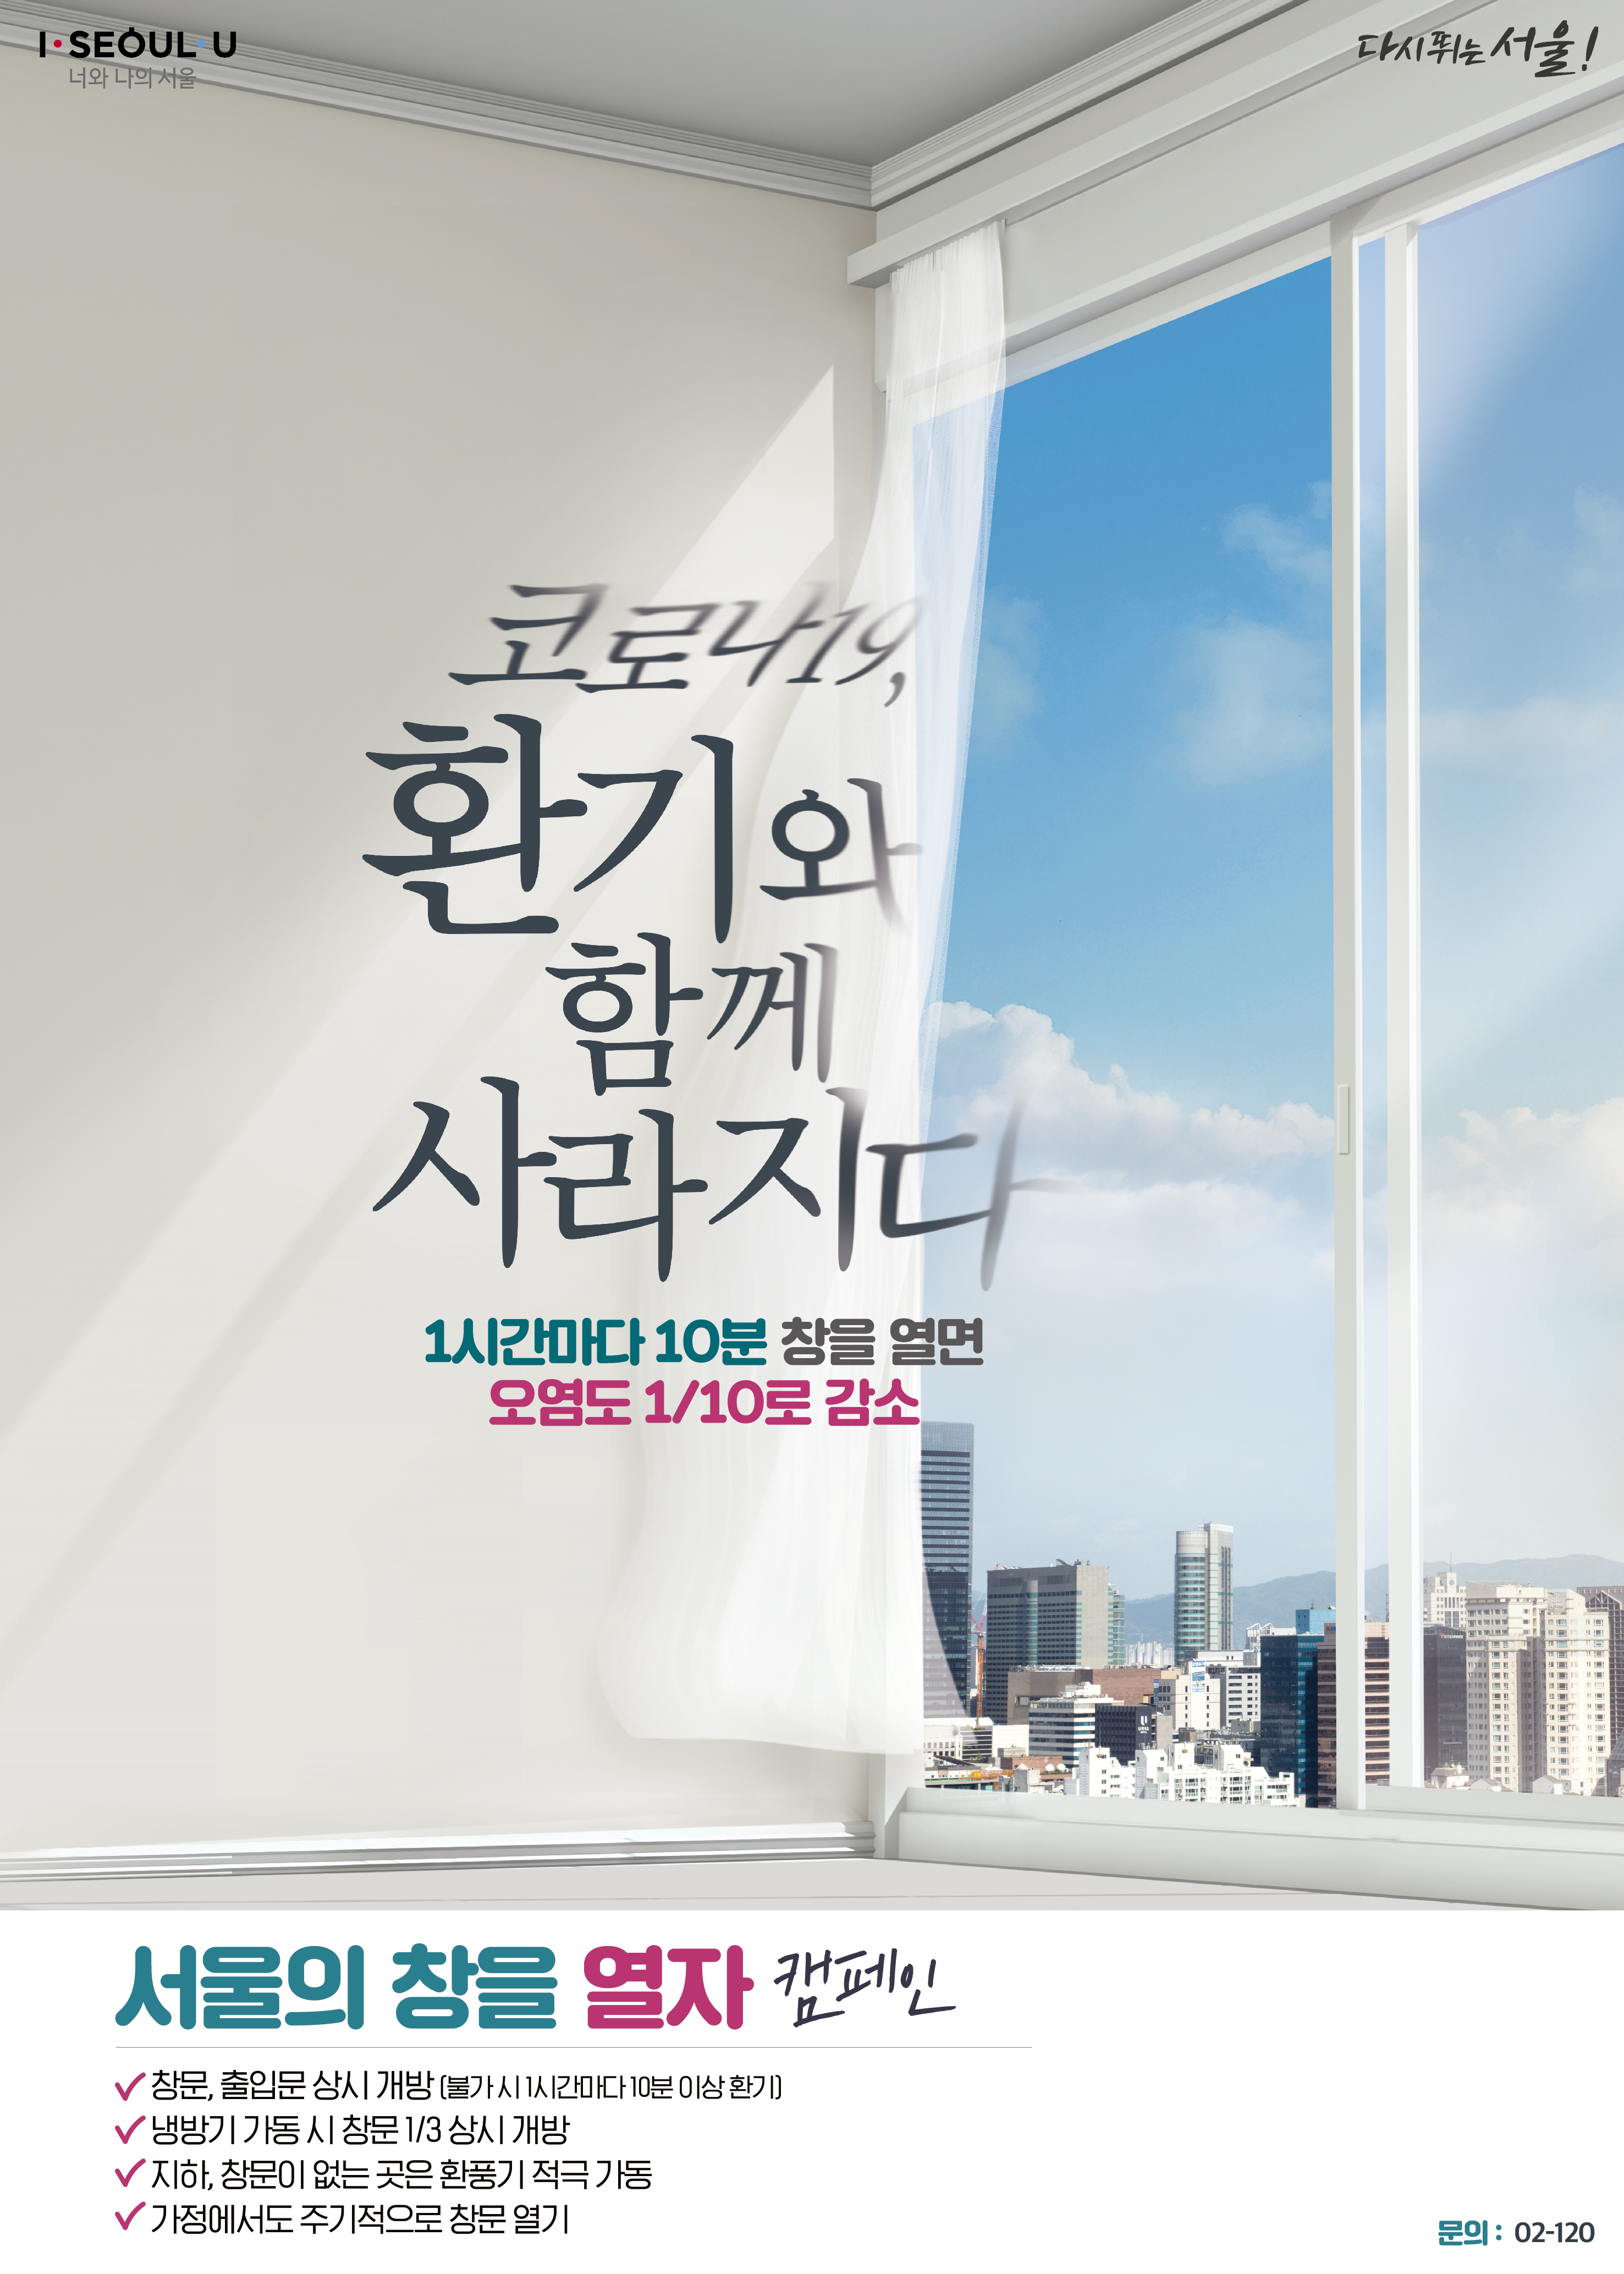 ‘서울의 창을 열자’ 환기 캠페인 포스터